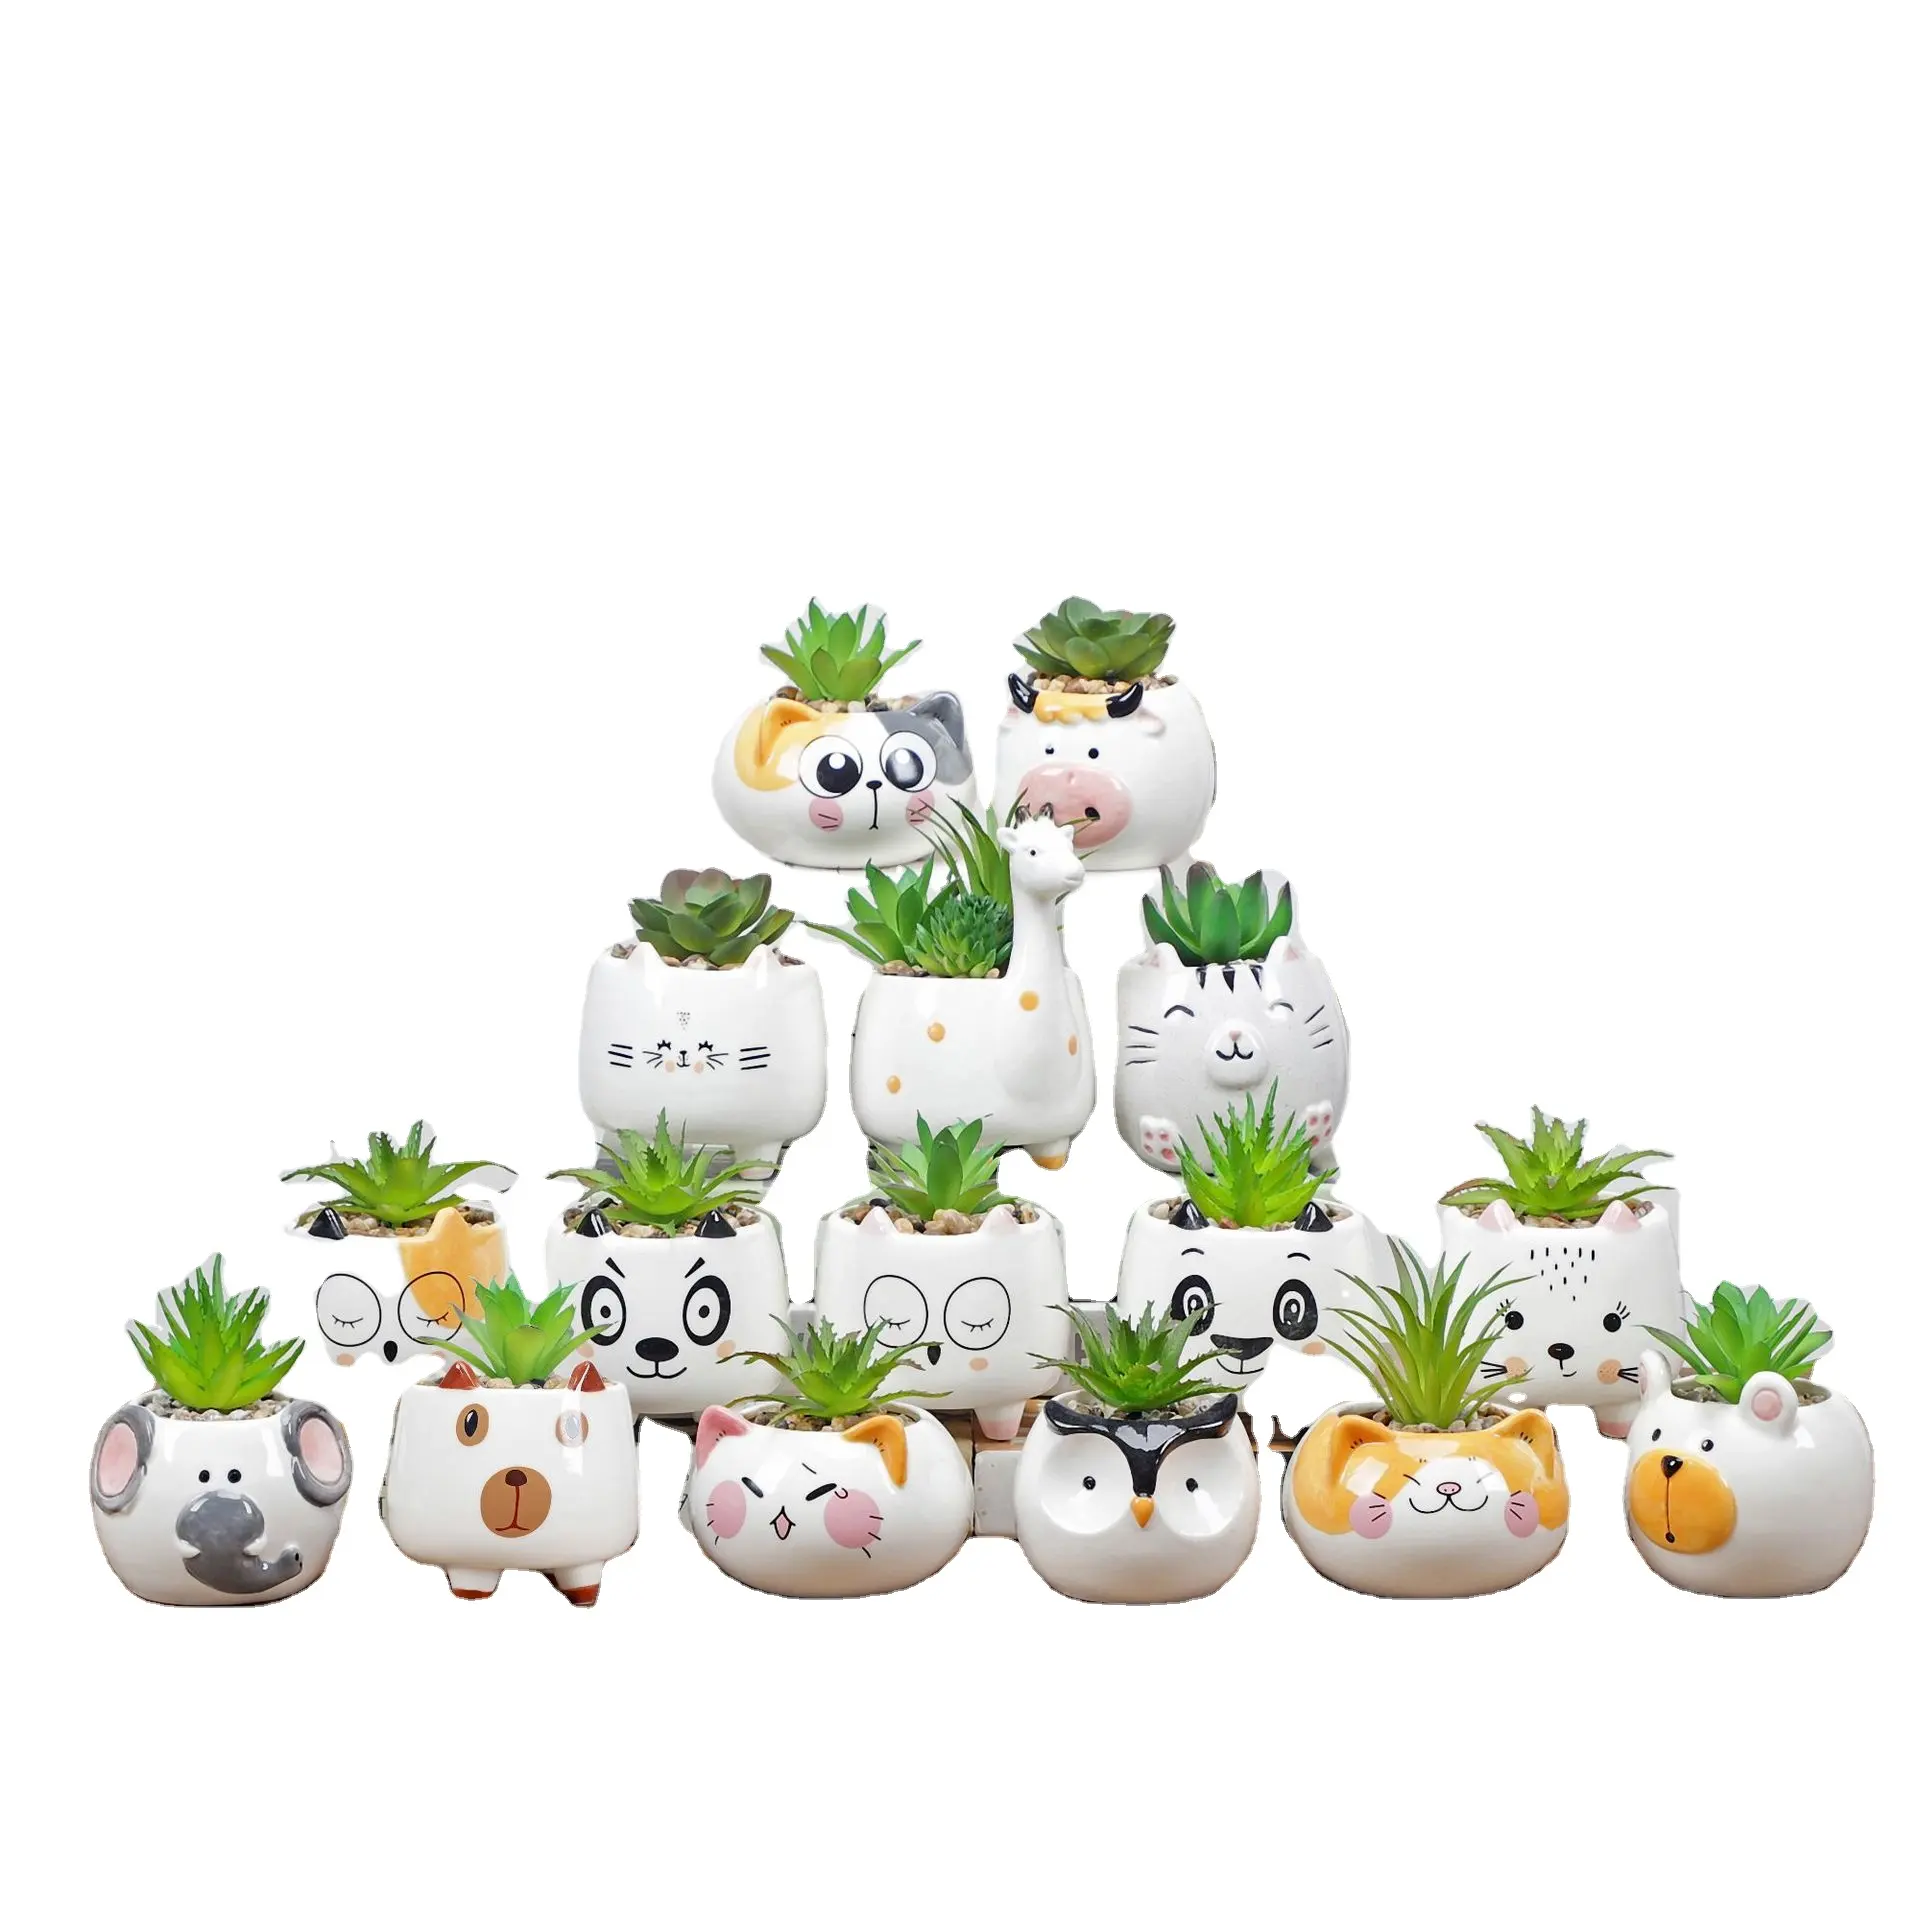 20デザインかわいい動物セラミックプランターミニガーデンプランター家の装飾多肉植物サボテン植木鉢